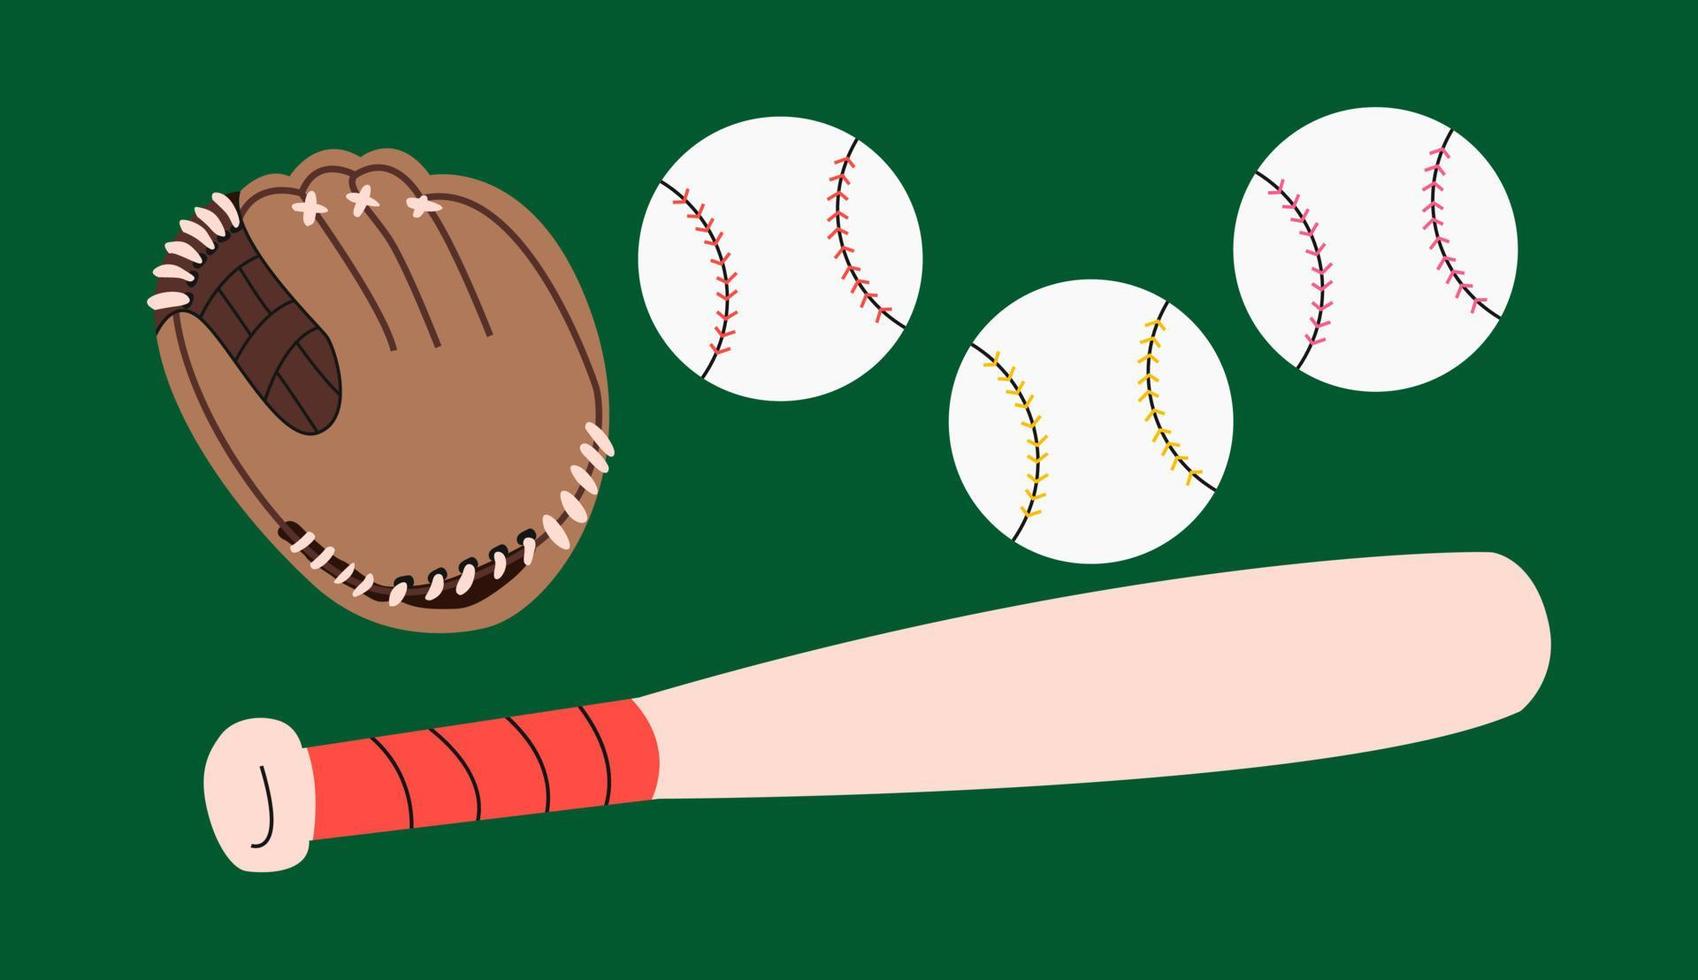 attrezzatura da baseball con guanto marrone cartone animato, palline e mazza, illustrazione su sfondo verde palla con cuciture rosse, gialle, rosa concetto di sport di squadra. set piatto colorato disegnato a mano. vettore